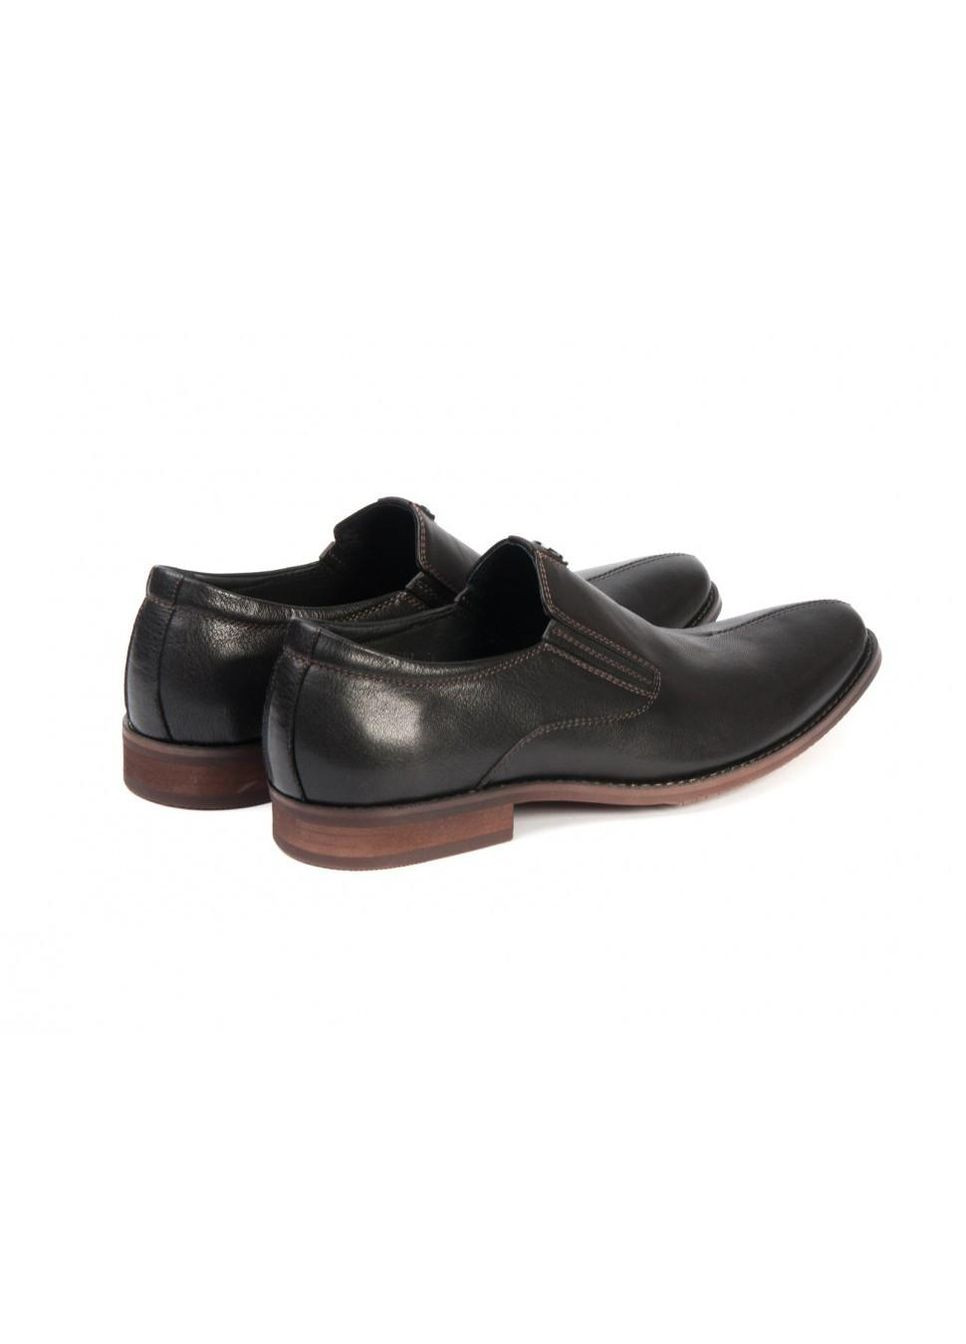 Черные туфли 7143054 цвет черный Carlo Delari